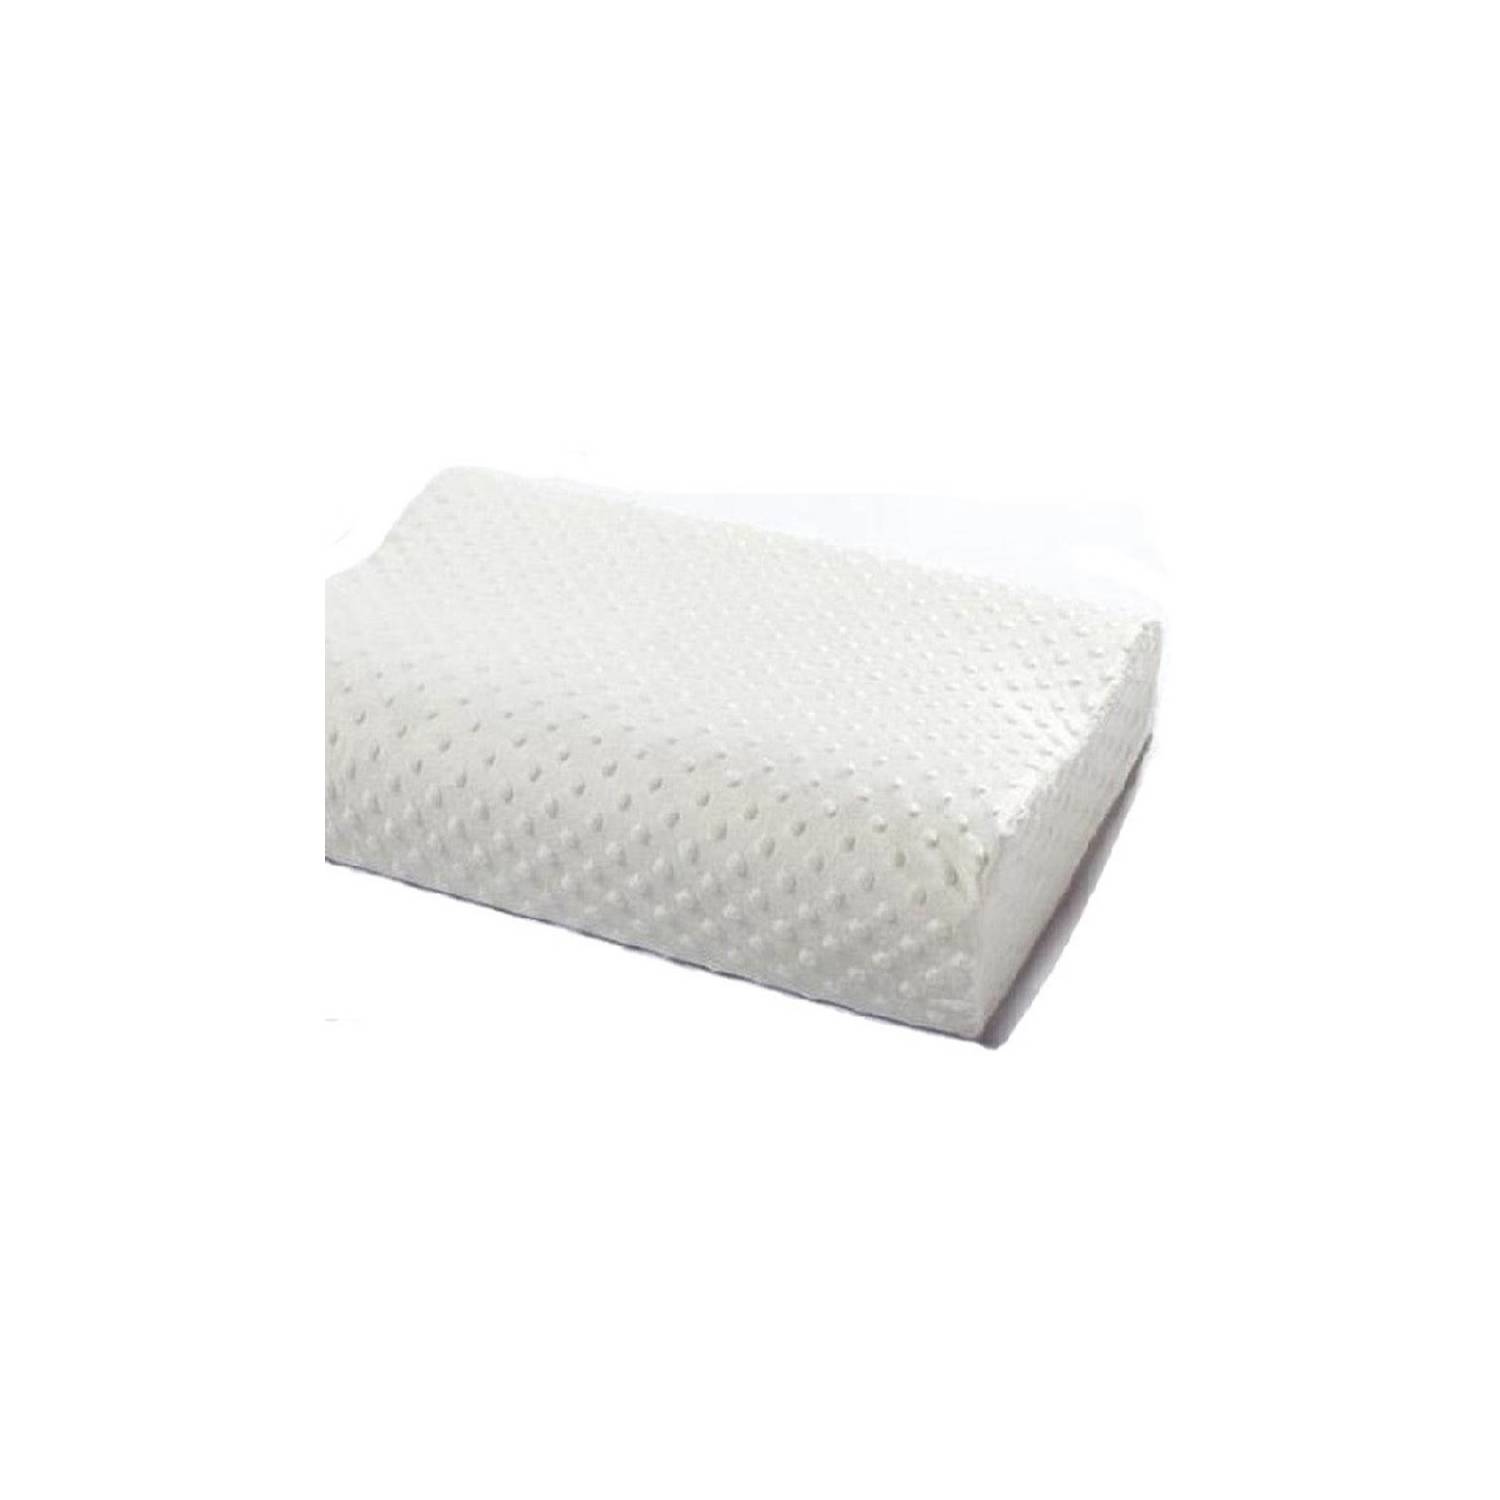 Almohada Cervical viscoelástica Memory Foam - Tamaño Grande X 2 Unidades -  Tienda del Confort y Protección